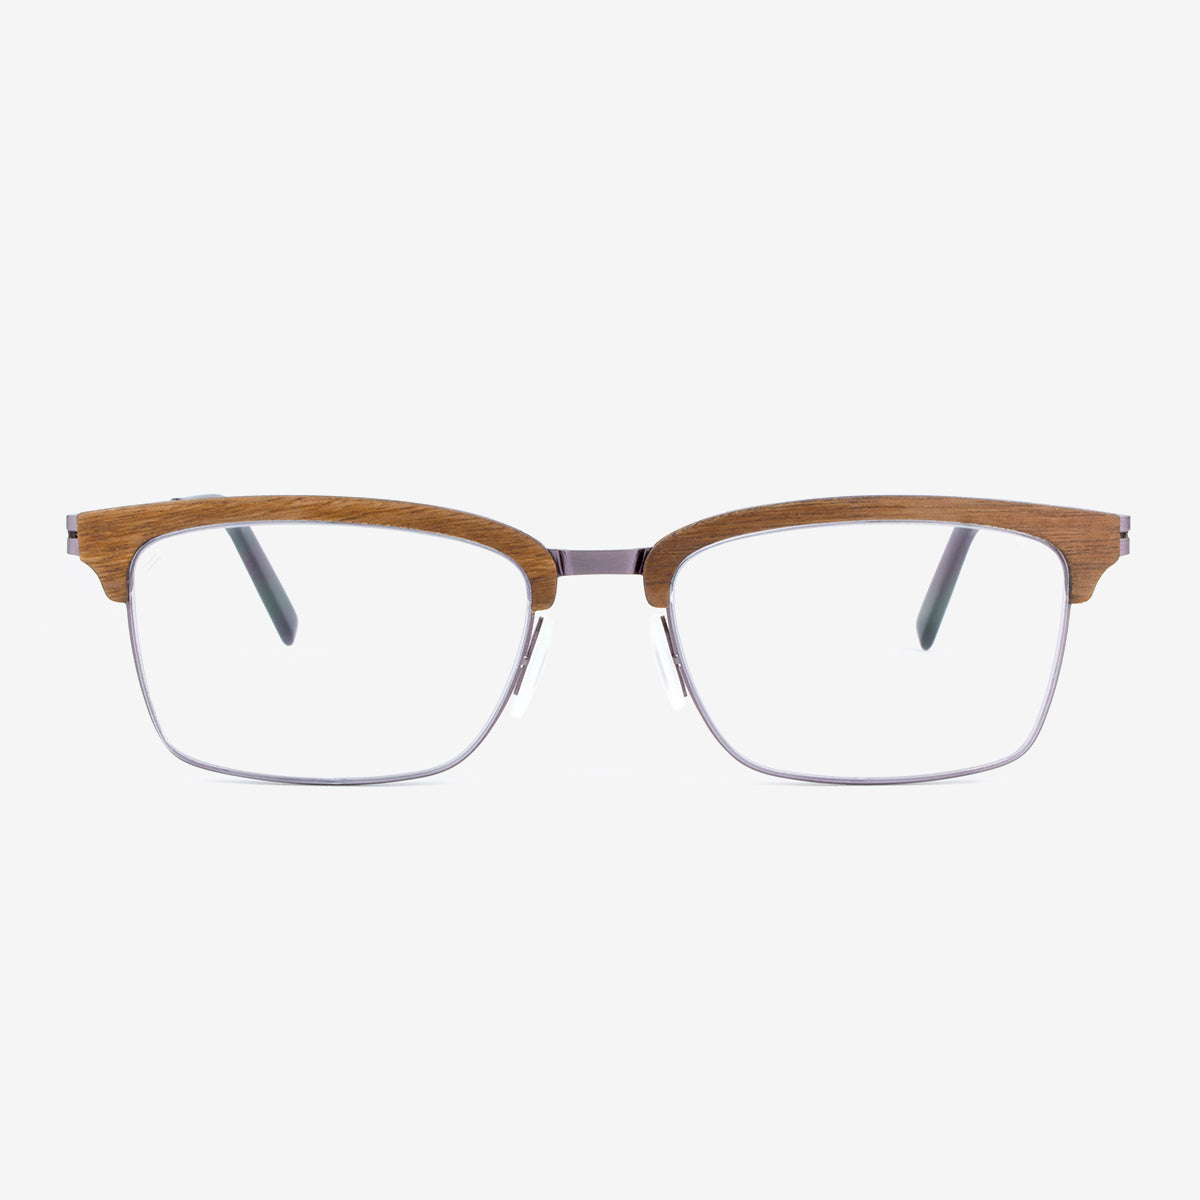 Stuart - Wood &amp; Metal Eyeglasses